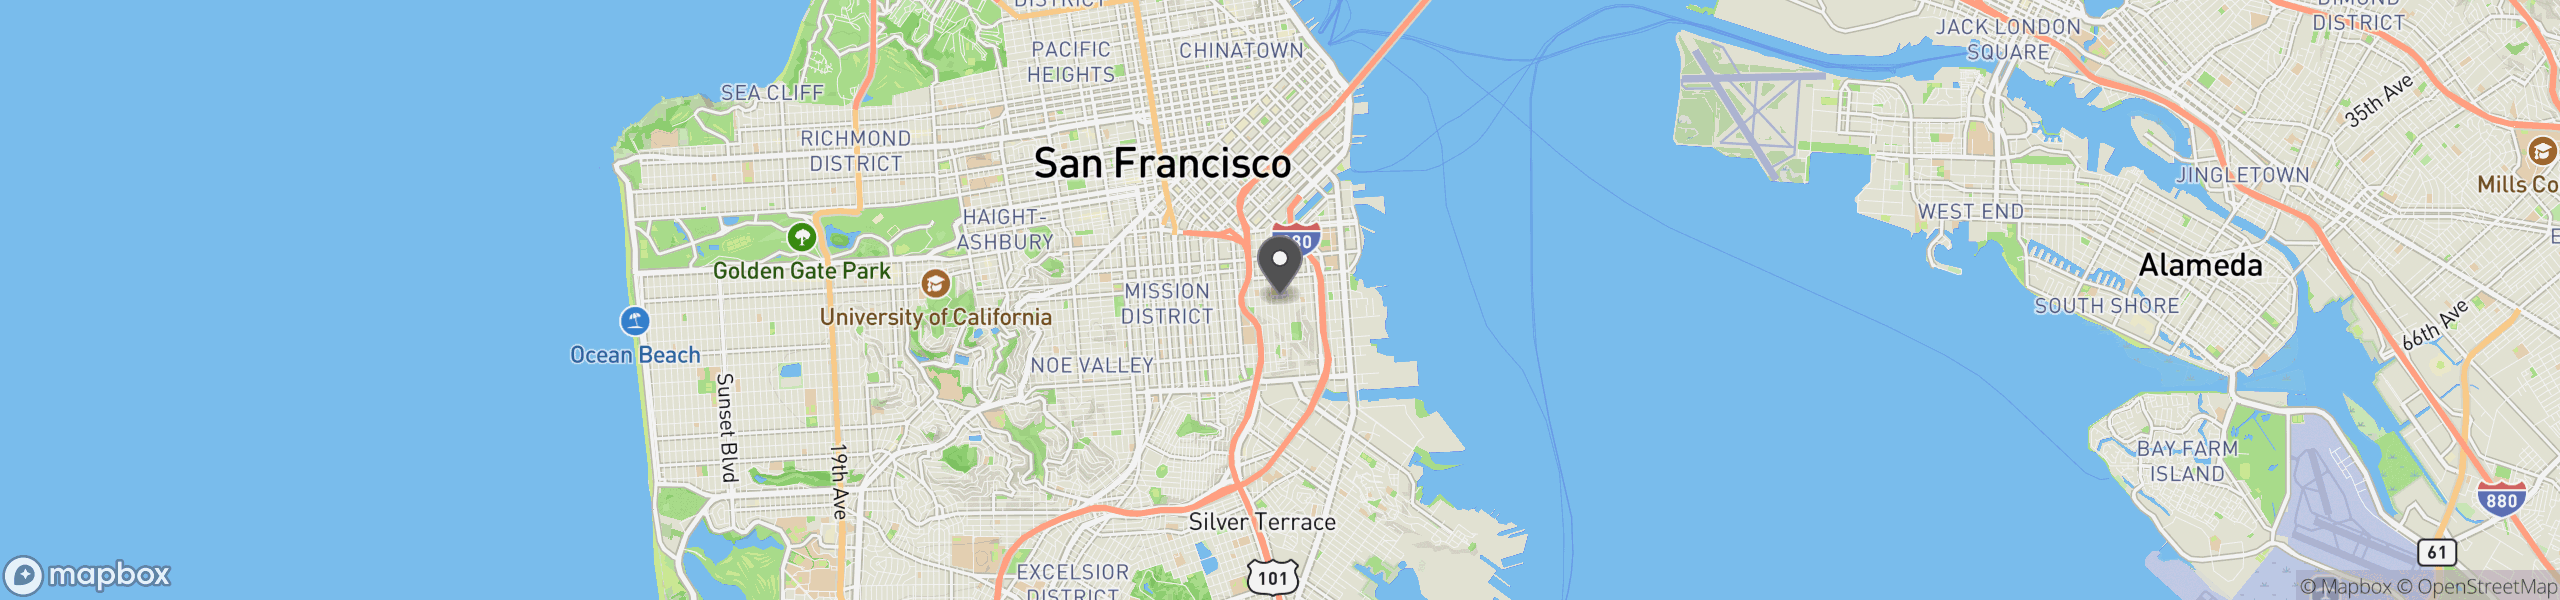 San Francisco, CA 94107